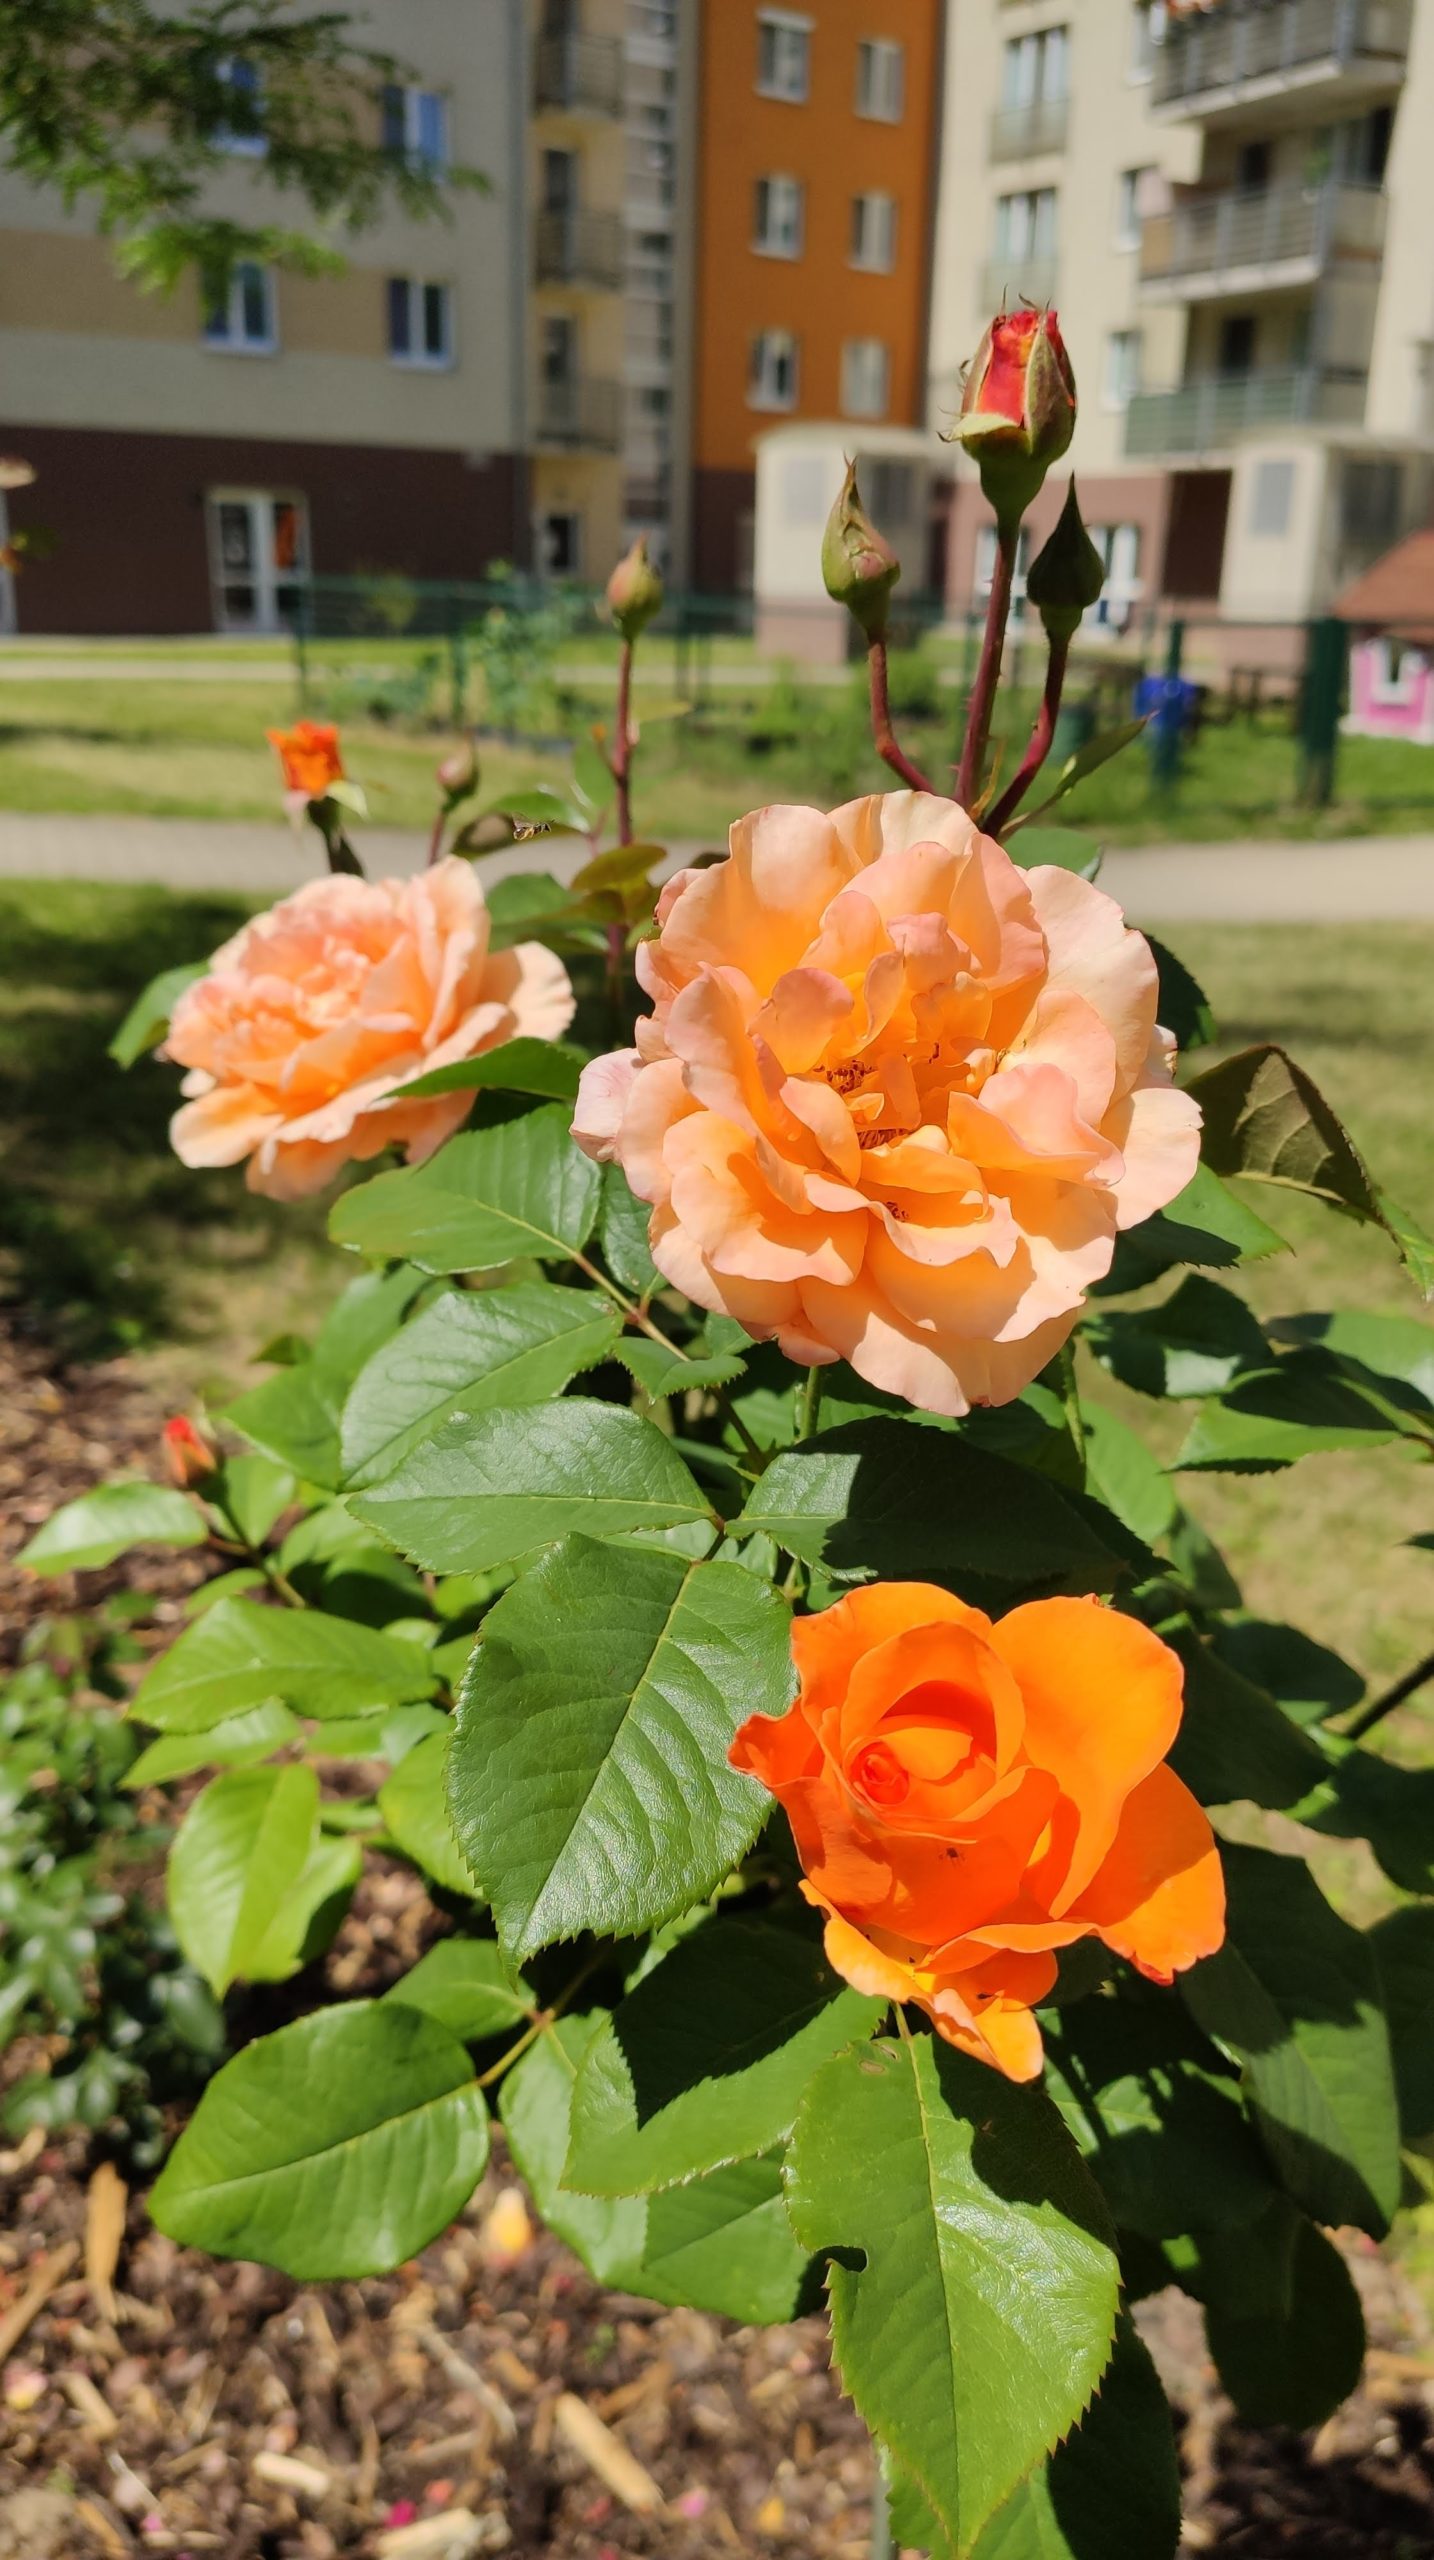 Ruža na kmienku s oranžovými kvetmi.